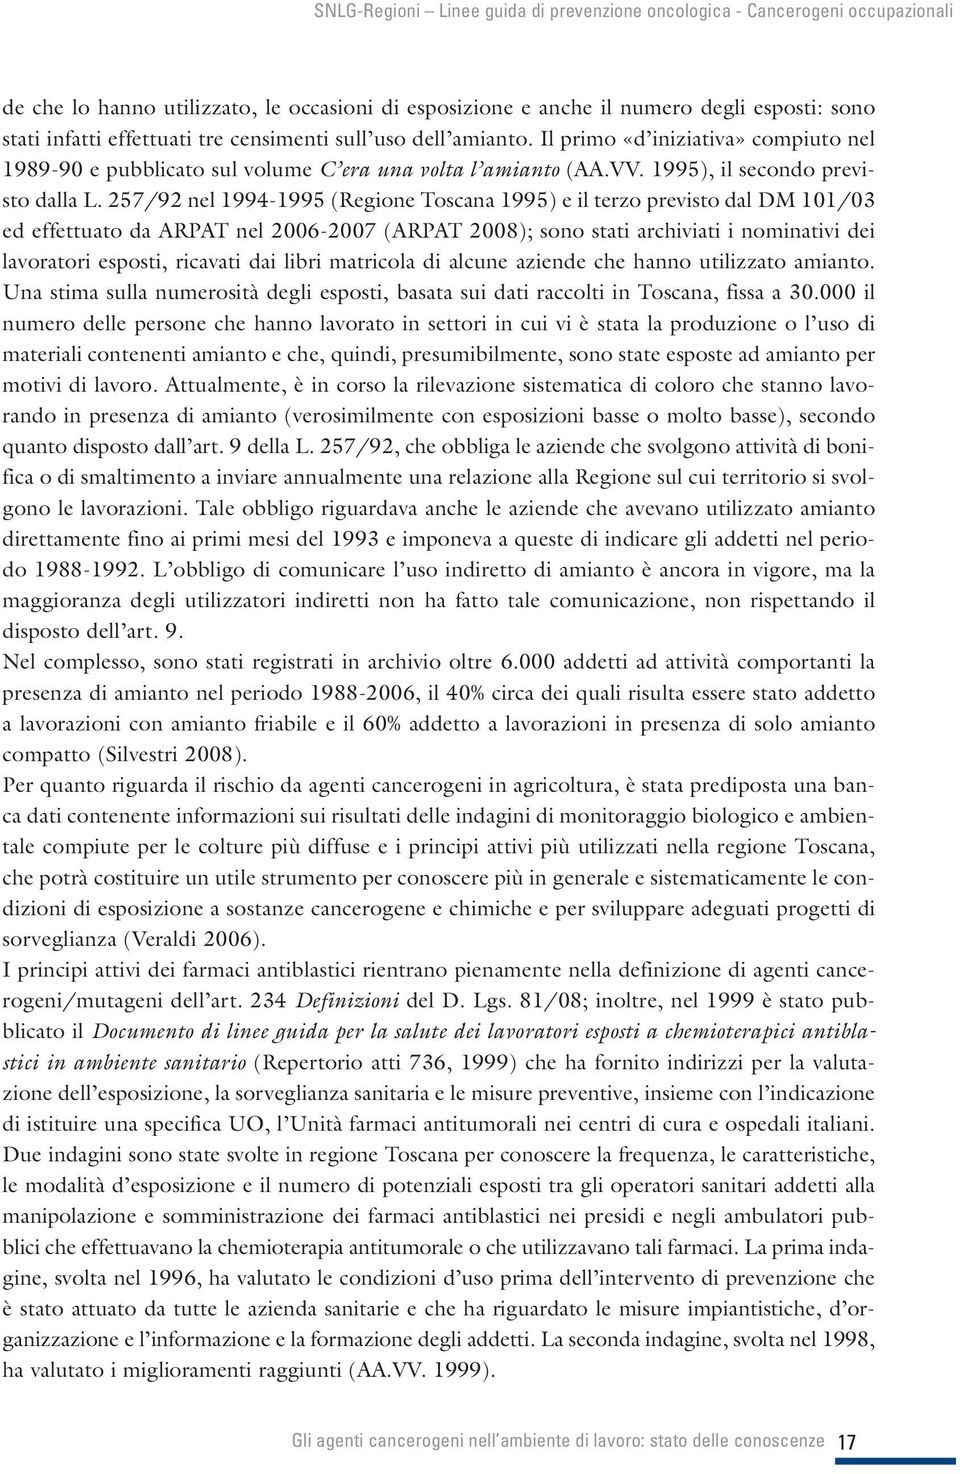 257/92 nel 1994-1995 (Regione Toscana 1995) e il terzo previsto dal DM 101/03 ed effettuato da ARPAT nel 2006-2007 (ARPAT 2008); sono stati archiviati i nominativi dei lavoratori esposti, ricavati